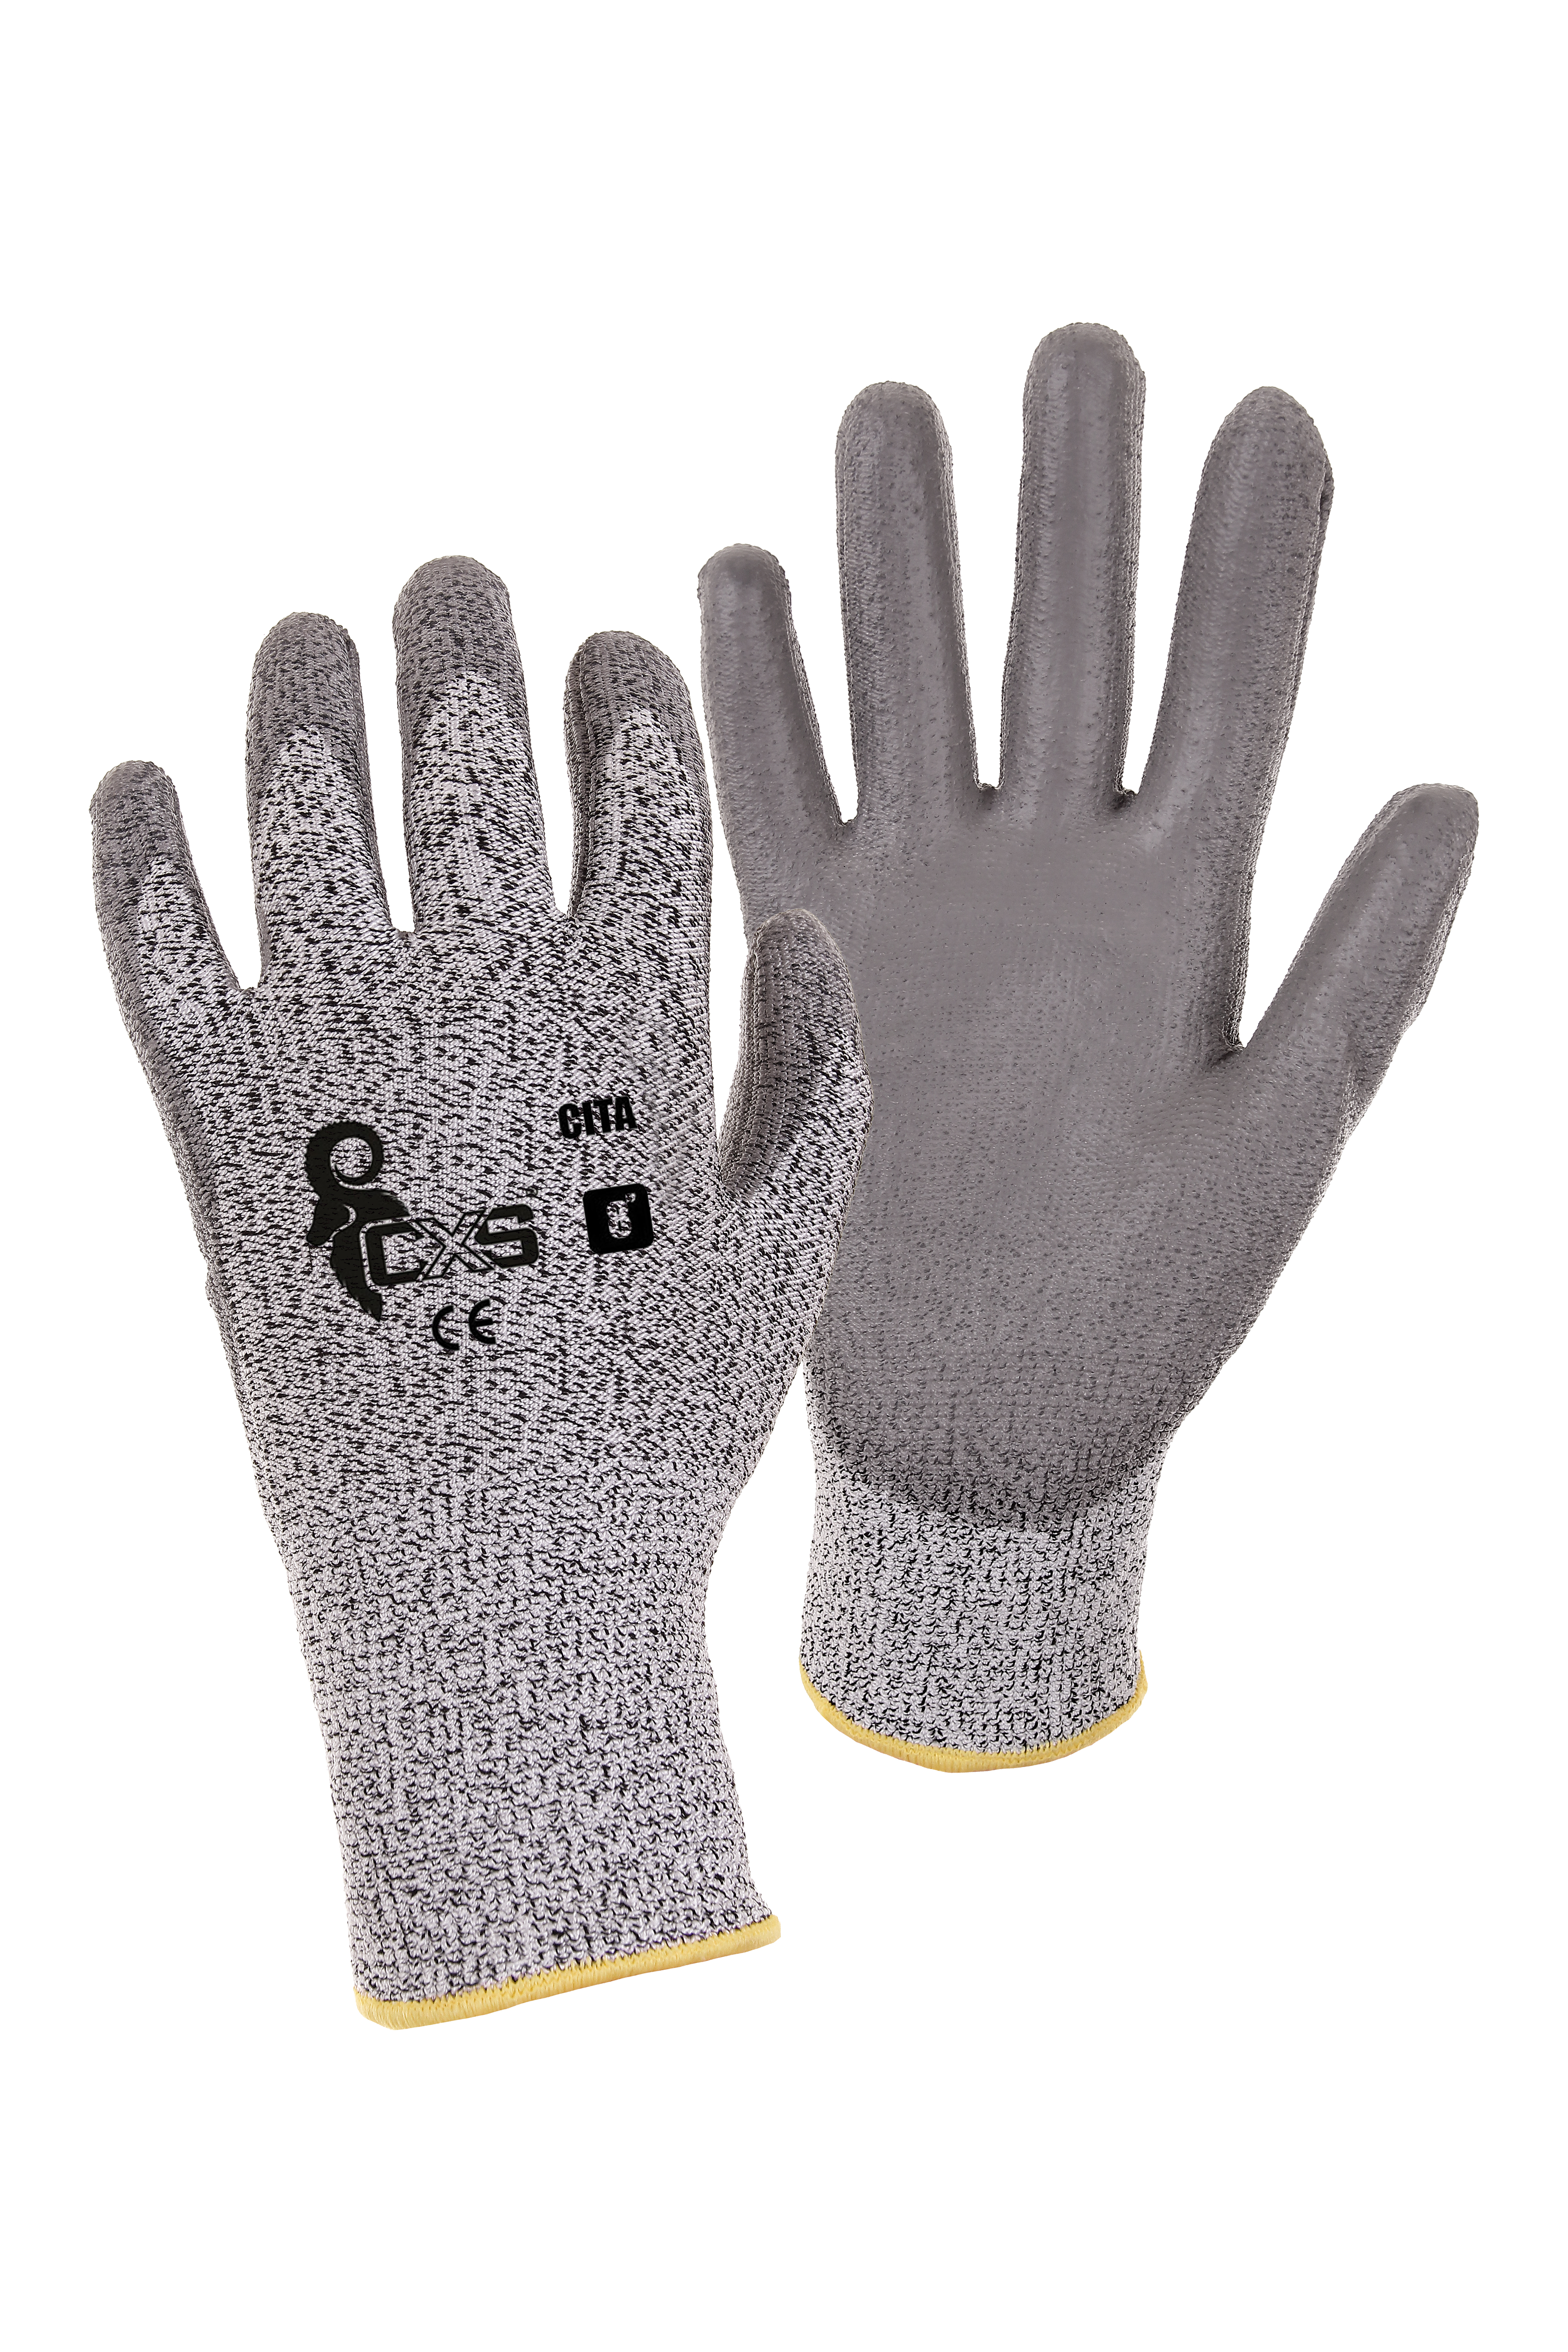 rukavice CITA, protipořezové, šedé, velikost 6 0.04 Kg TOP Sklad4 606056 17